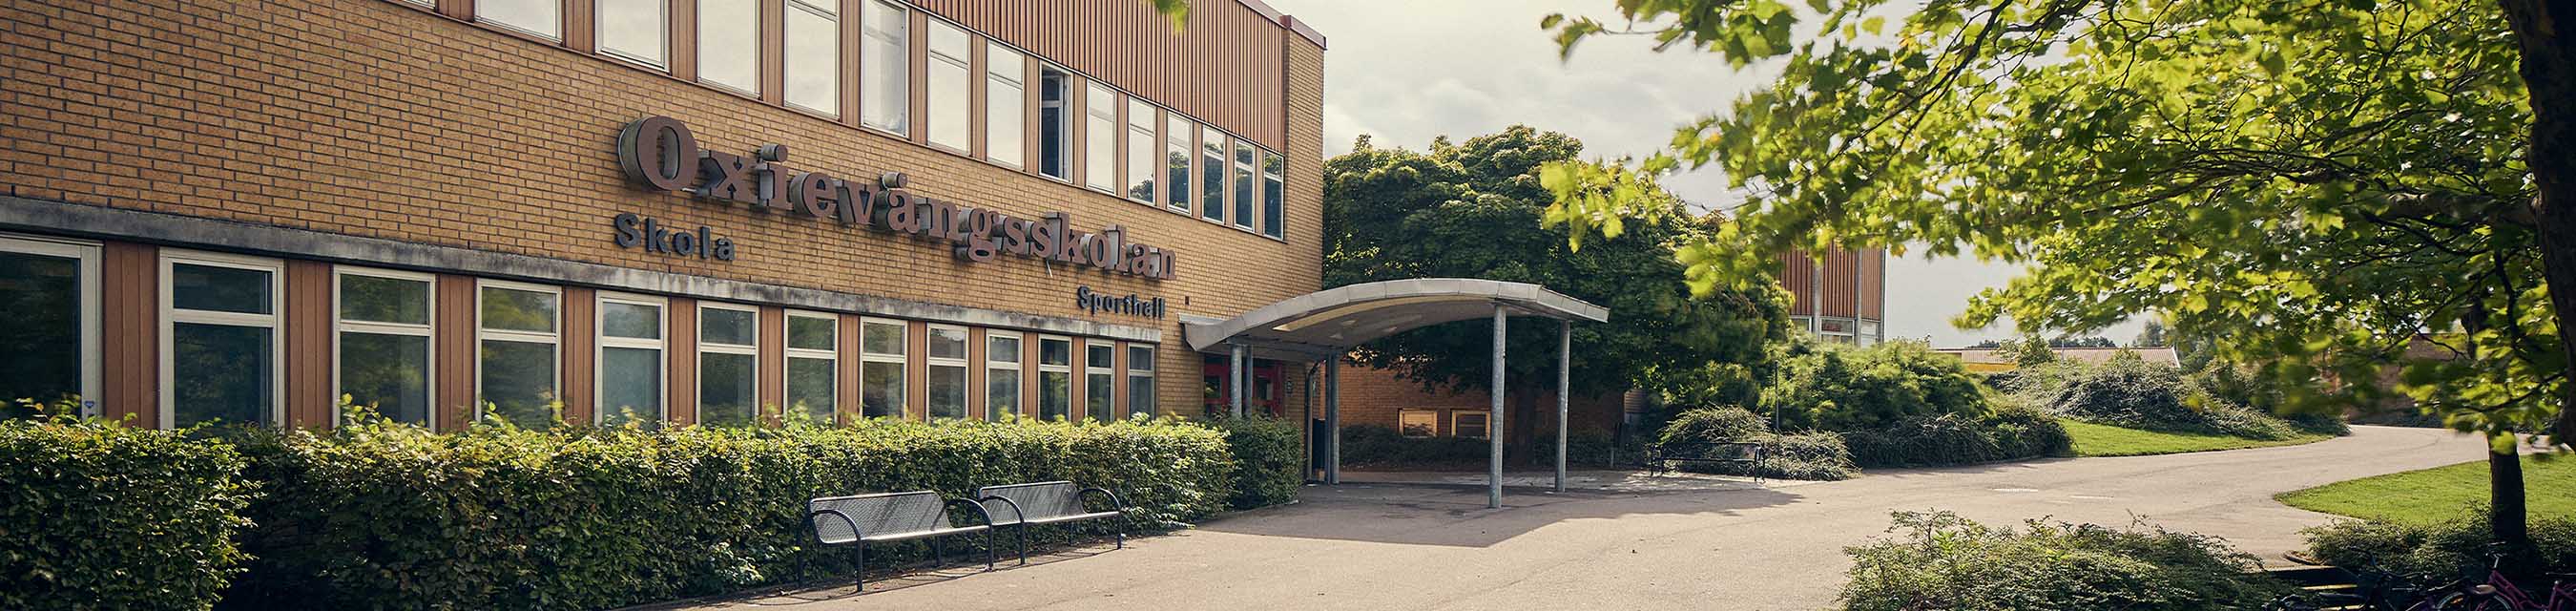 Oxievångsskolan ligger i stadsdelen Oxie i Malmös södra utkant i naturnära omgivning.